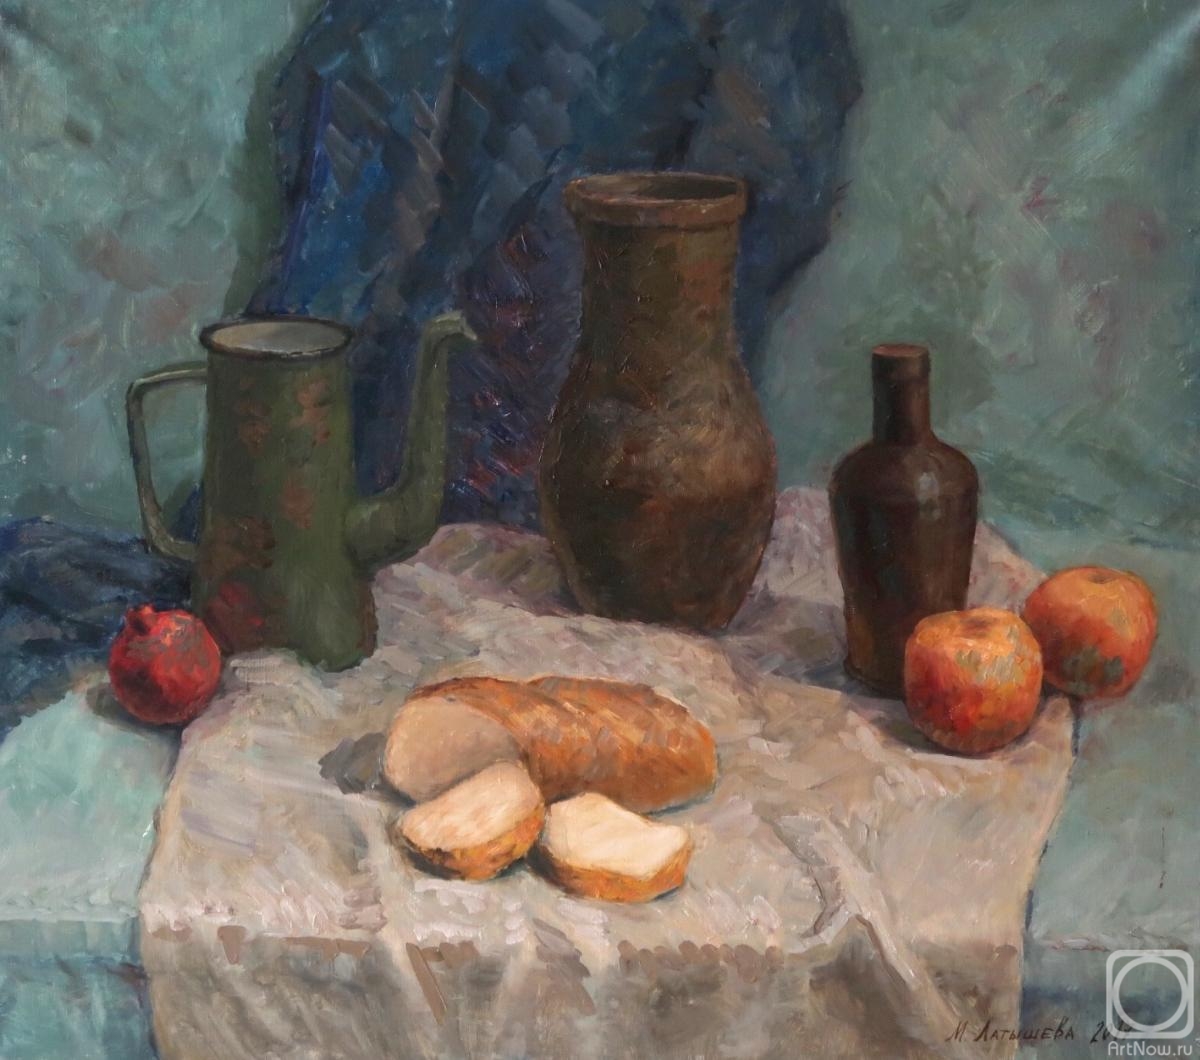 Latysheva Maria. Country-style still-life with bread